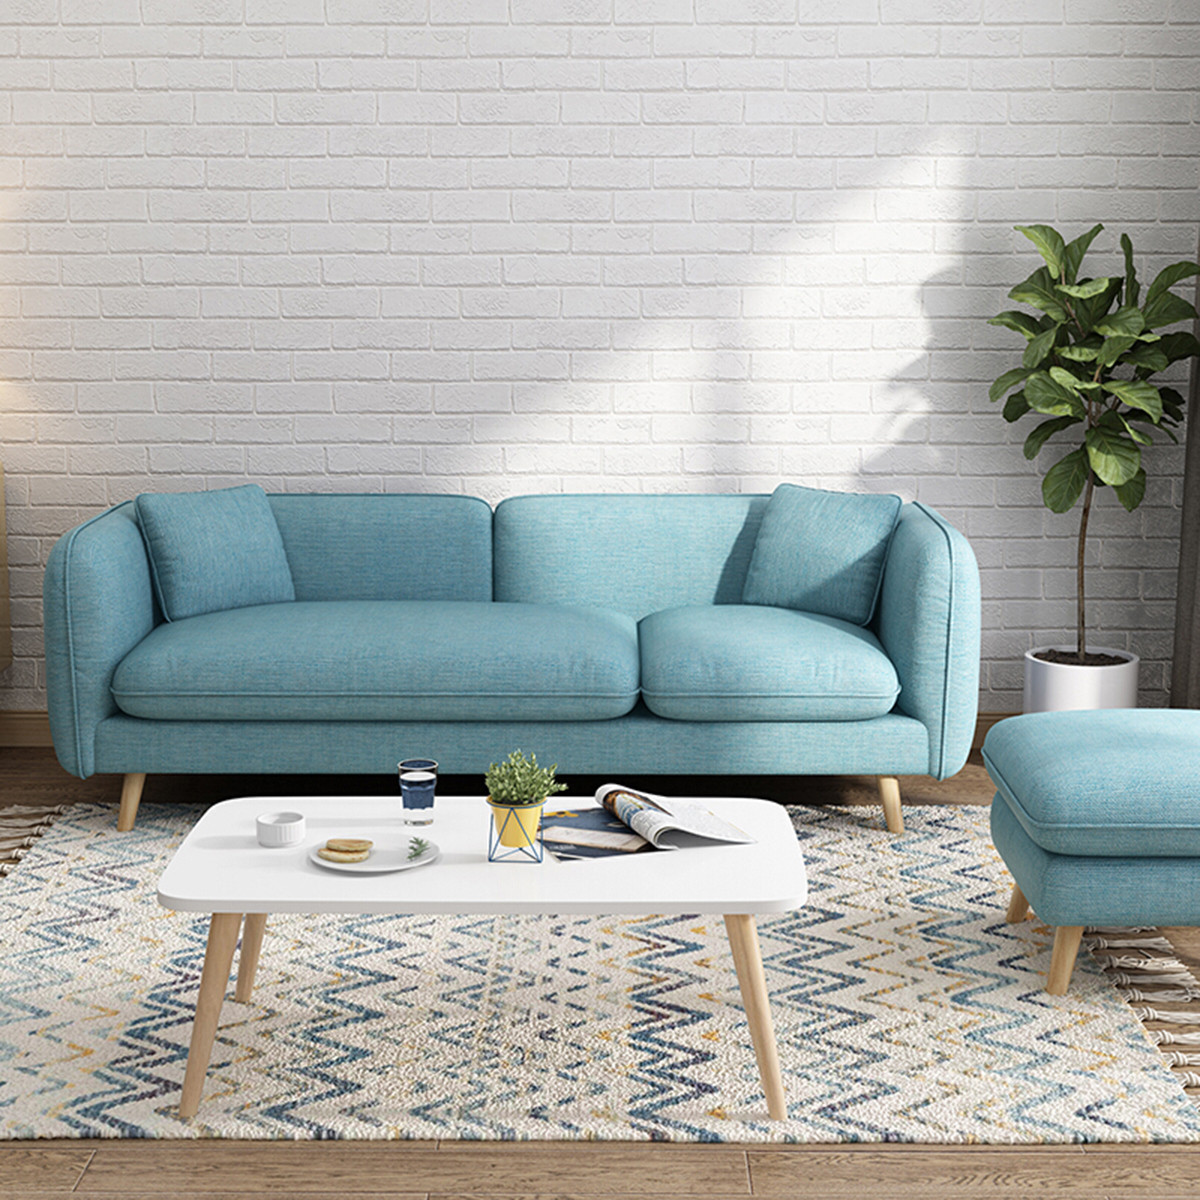 北欧布艺沙发现代客厅简约小户型沙发组合科技布沙发套装家具